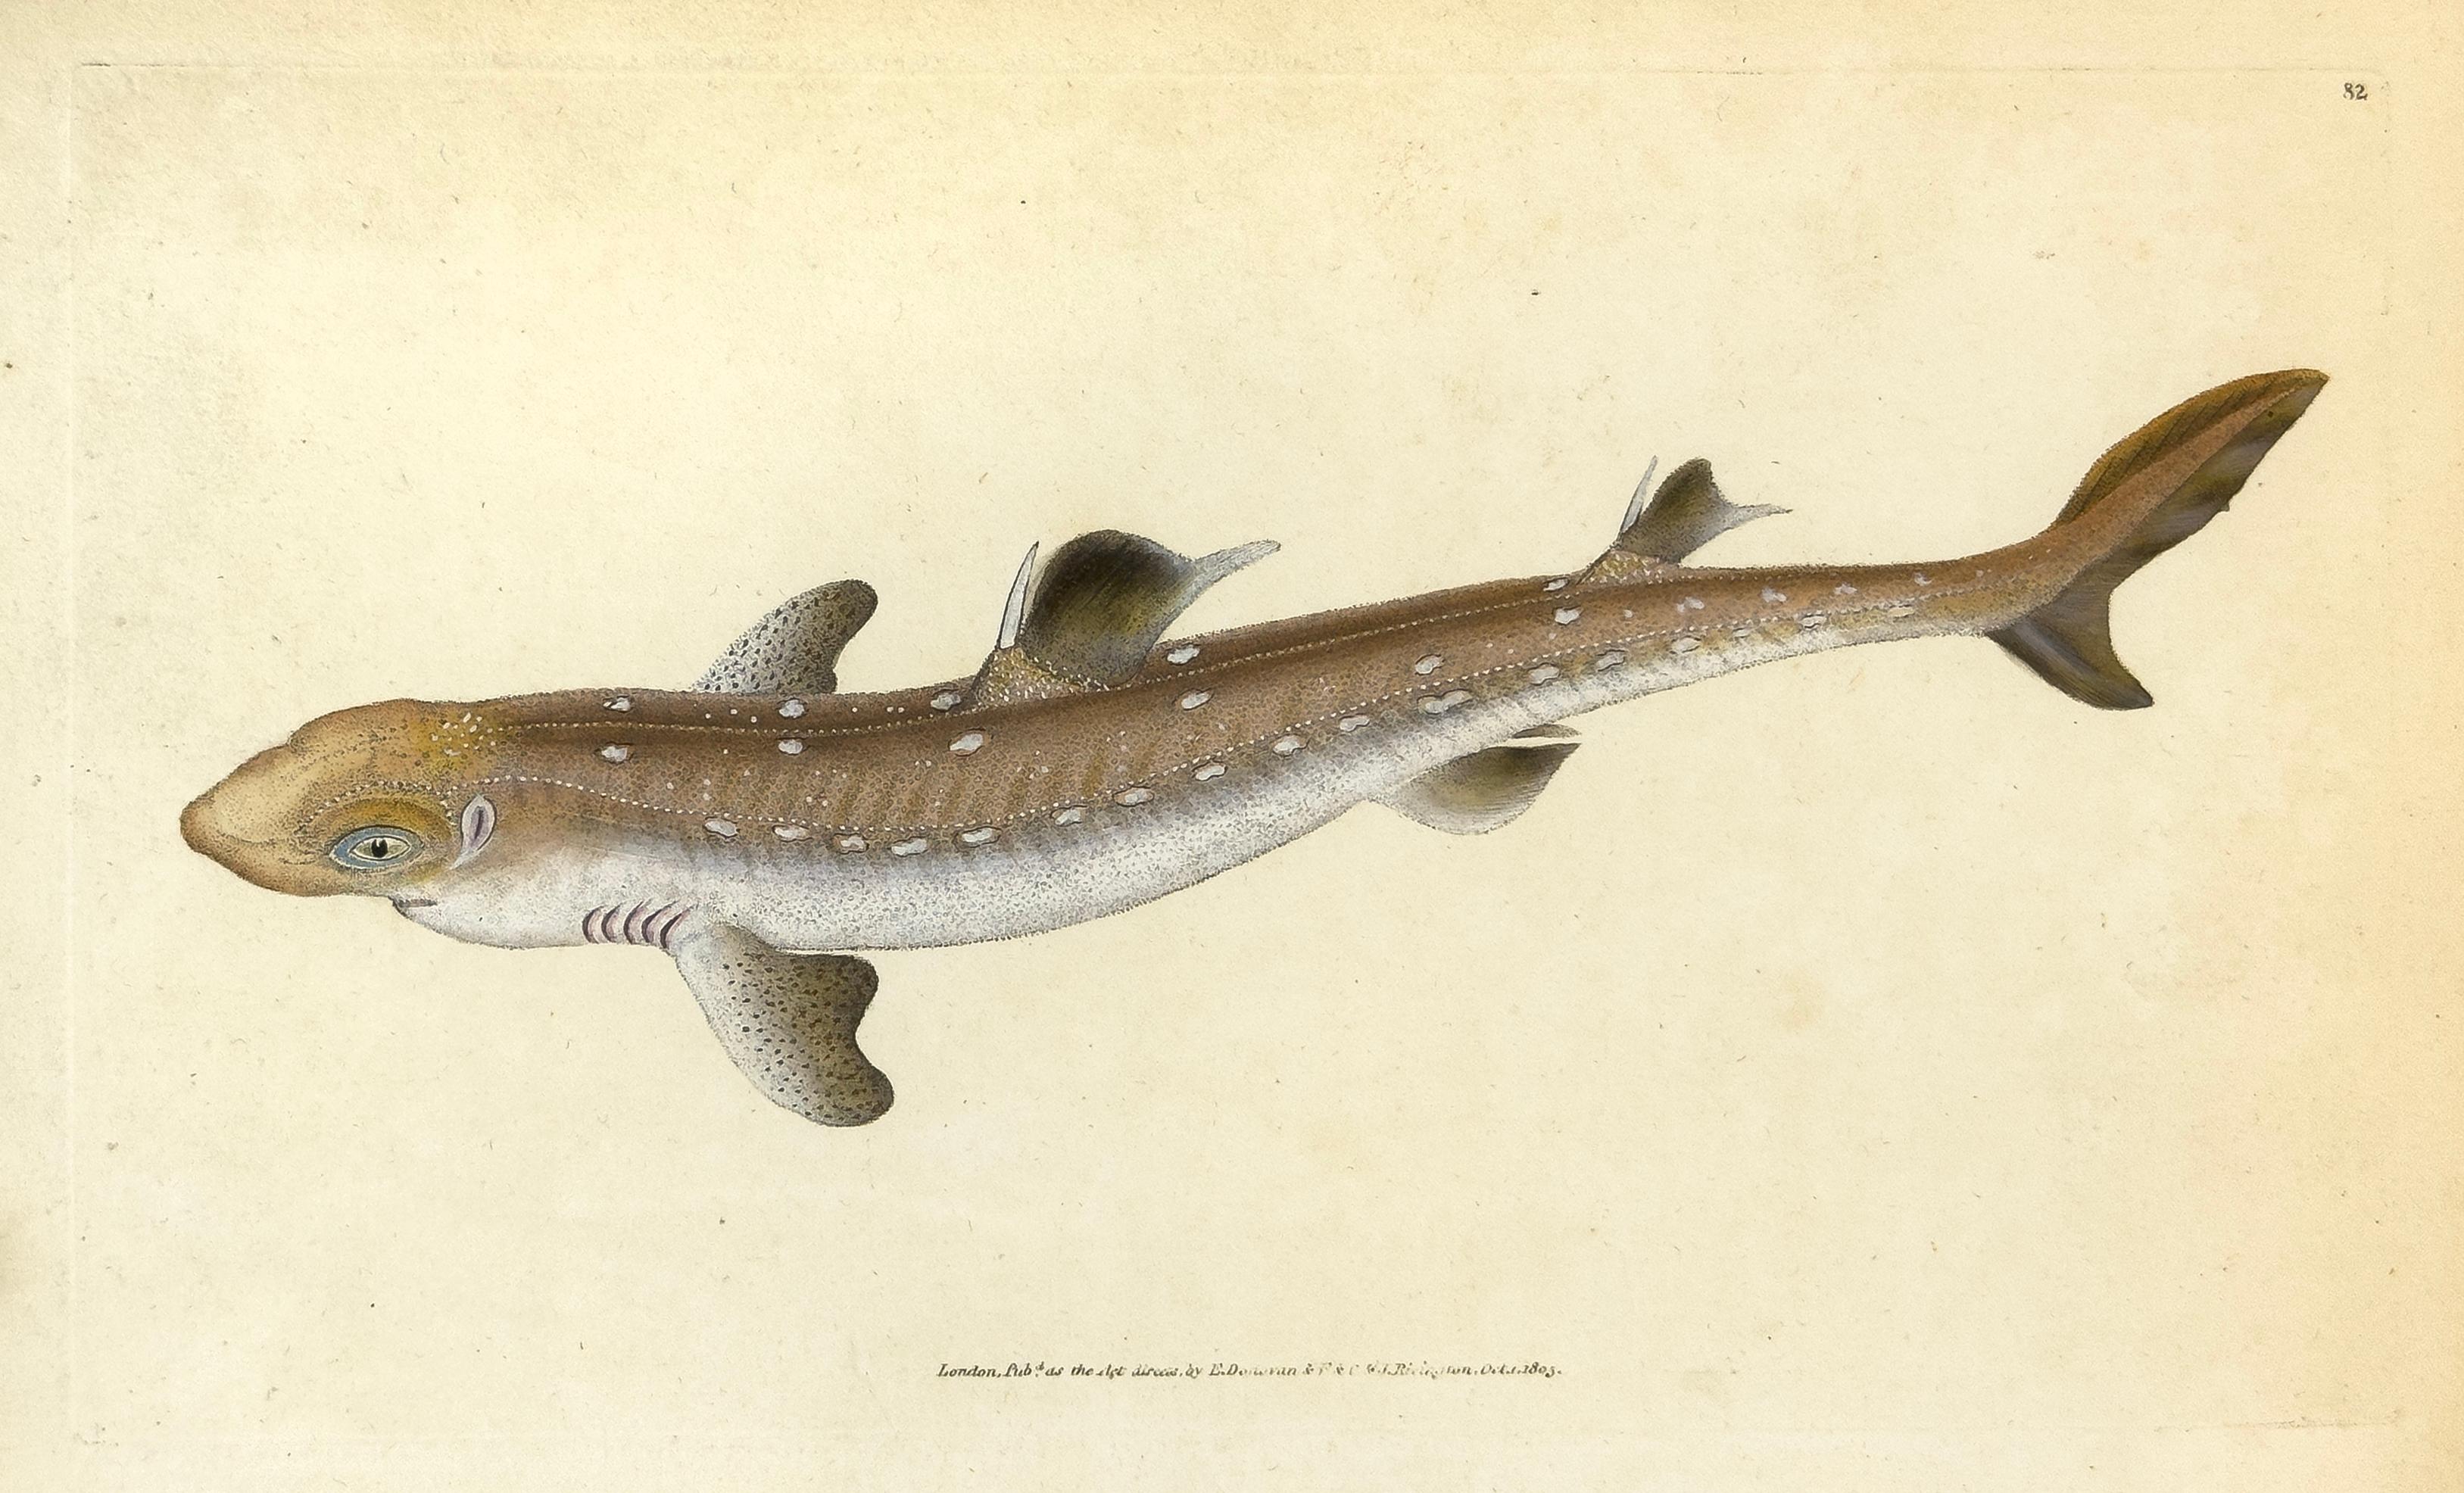 Edward Donovan Animal Print - 82: Squalus acanthias, Picked Sharke or Dog Fish